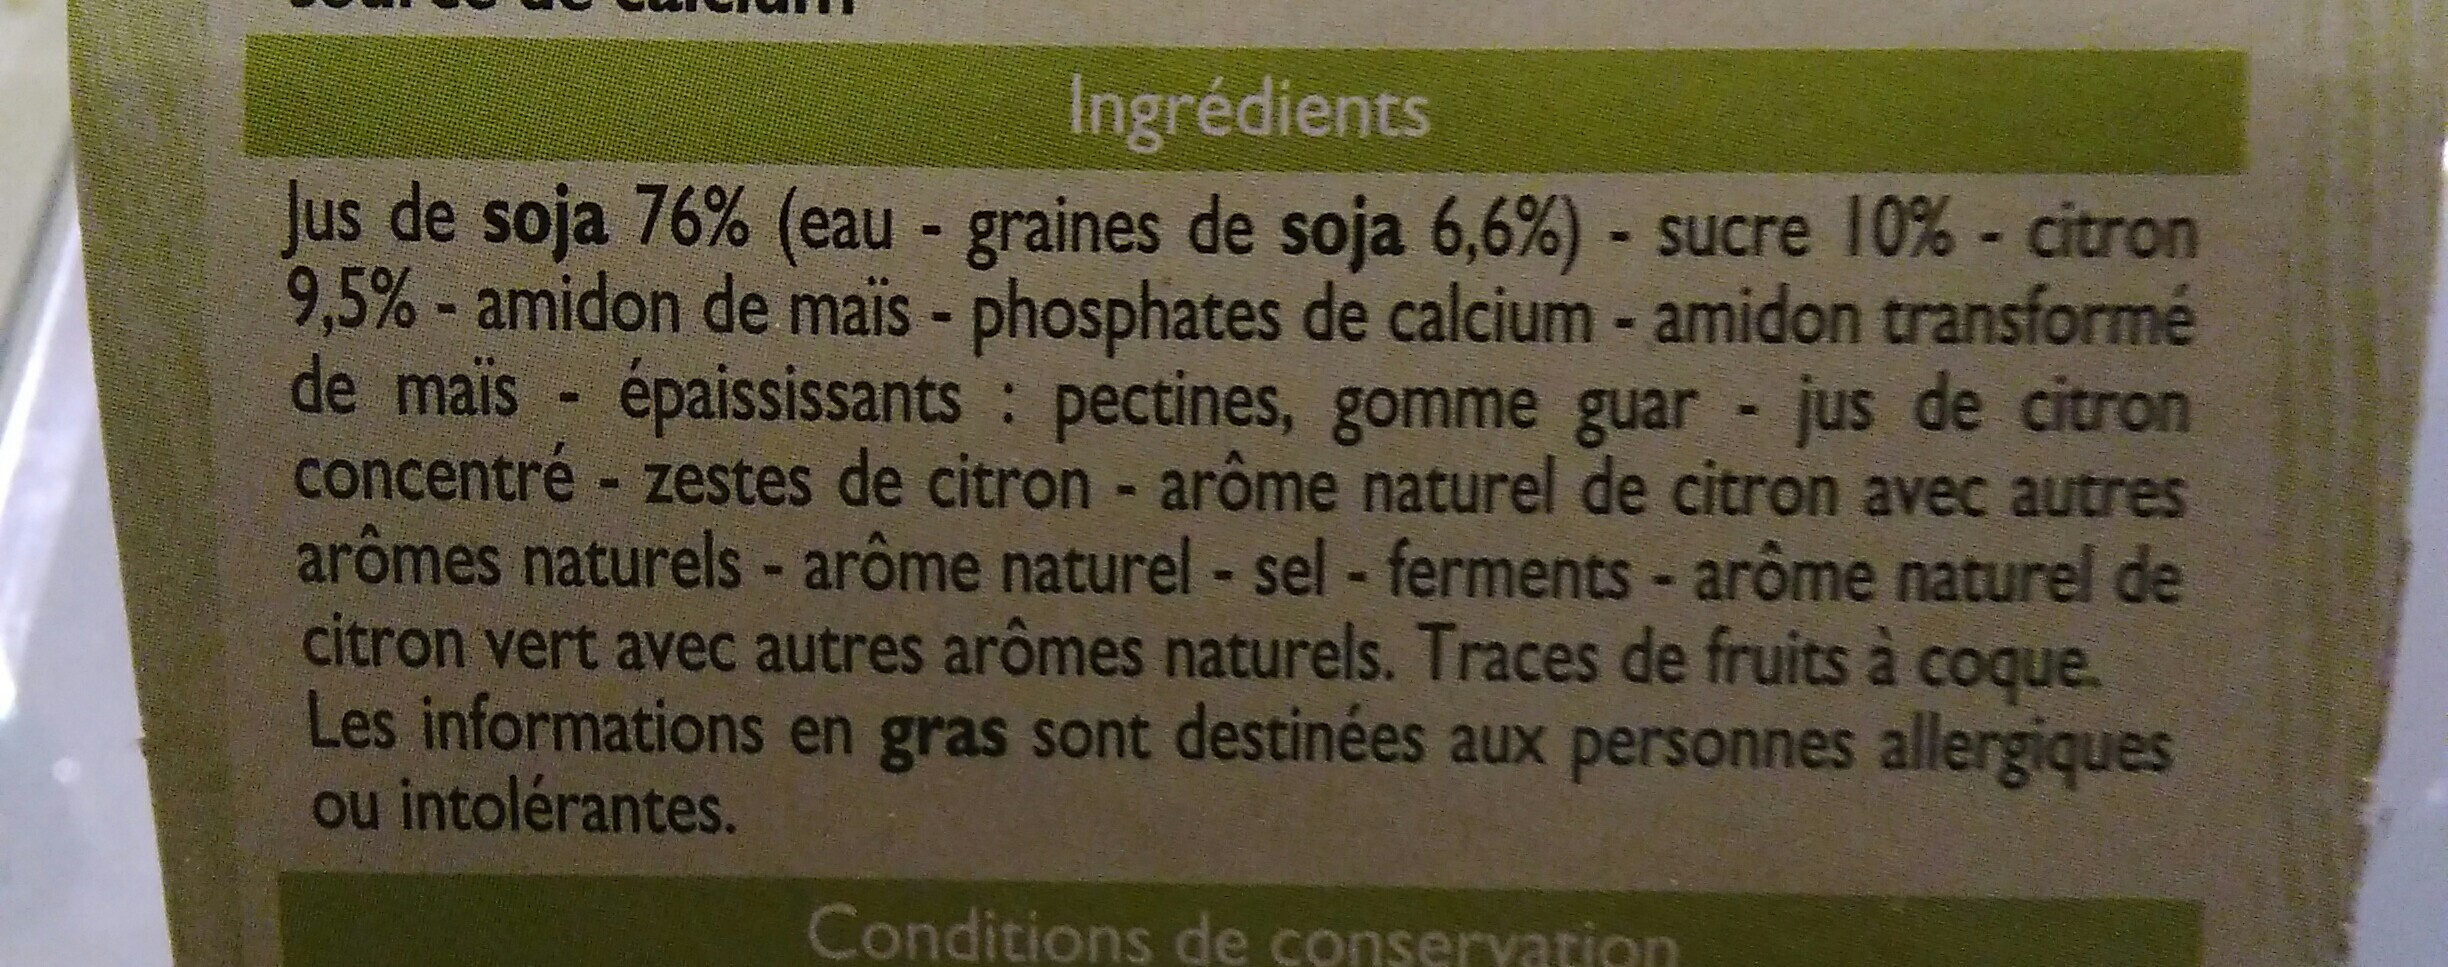 Spécialité au soja au citron - Ingredientes - fr